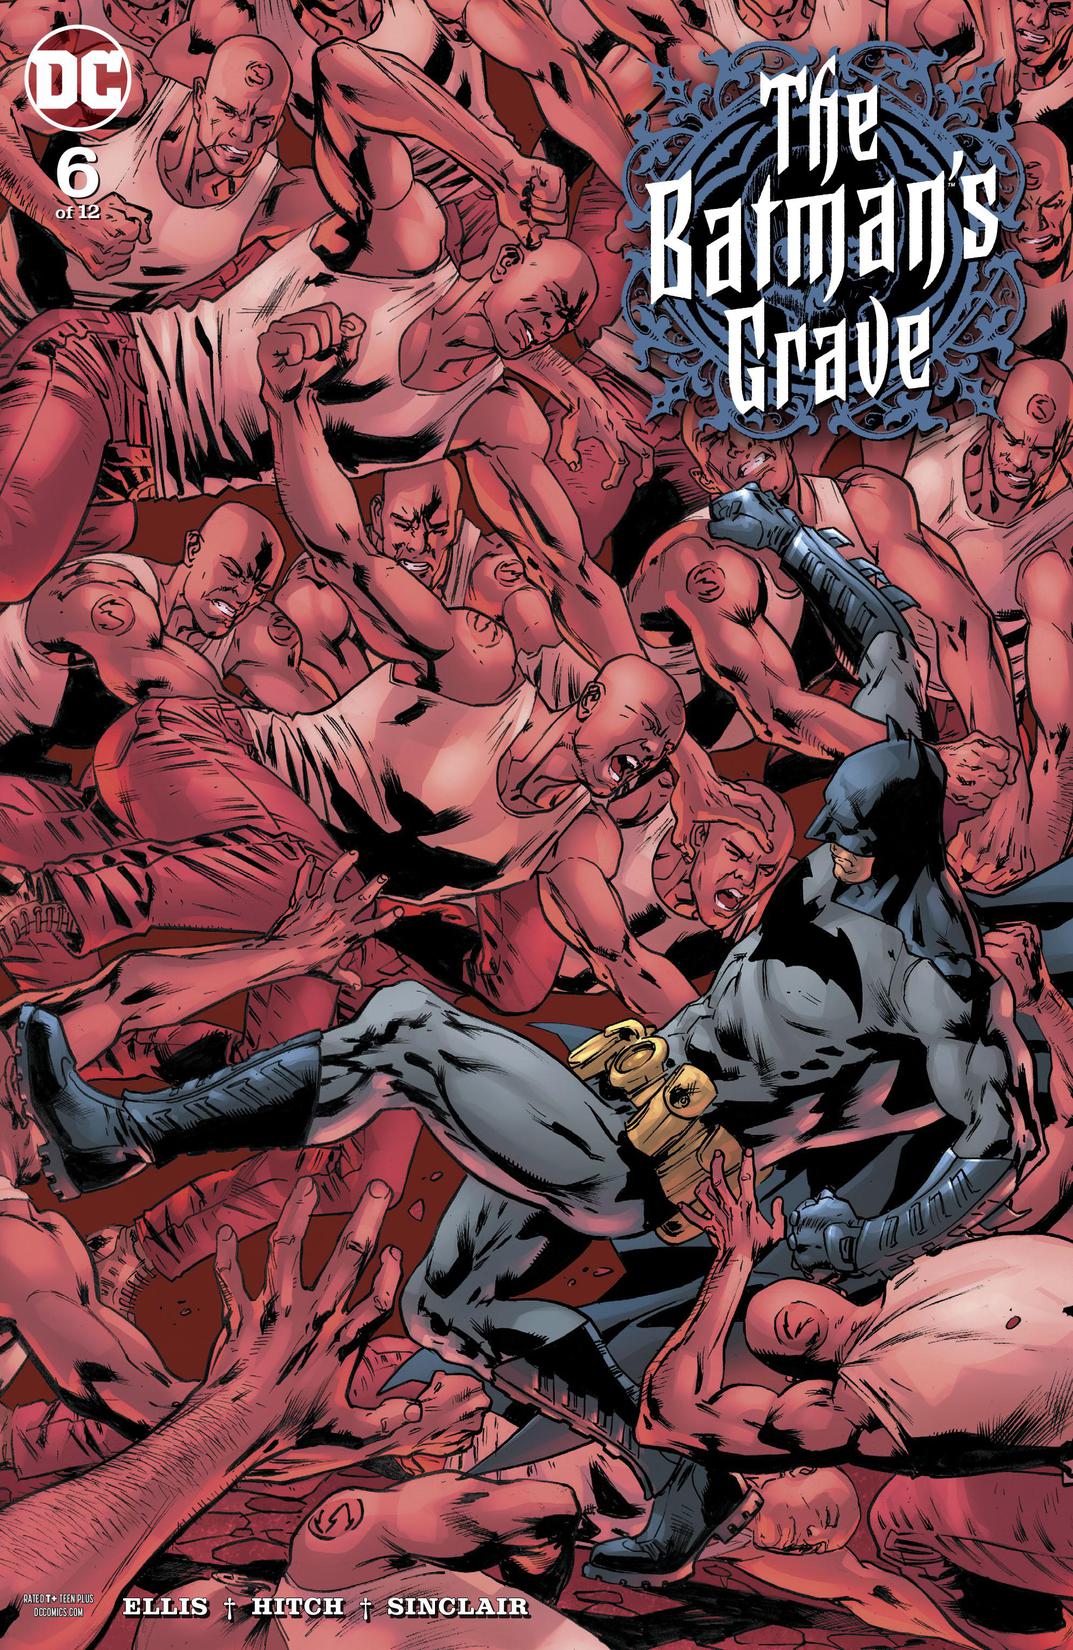 The Batman's Grave #6 preview images